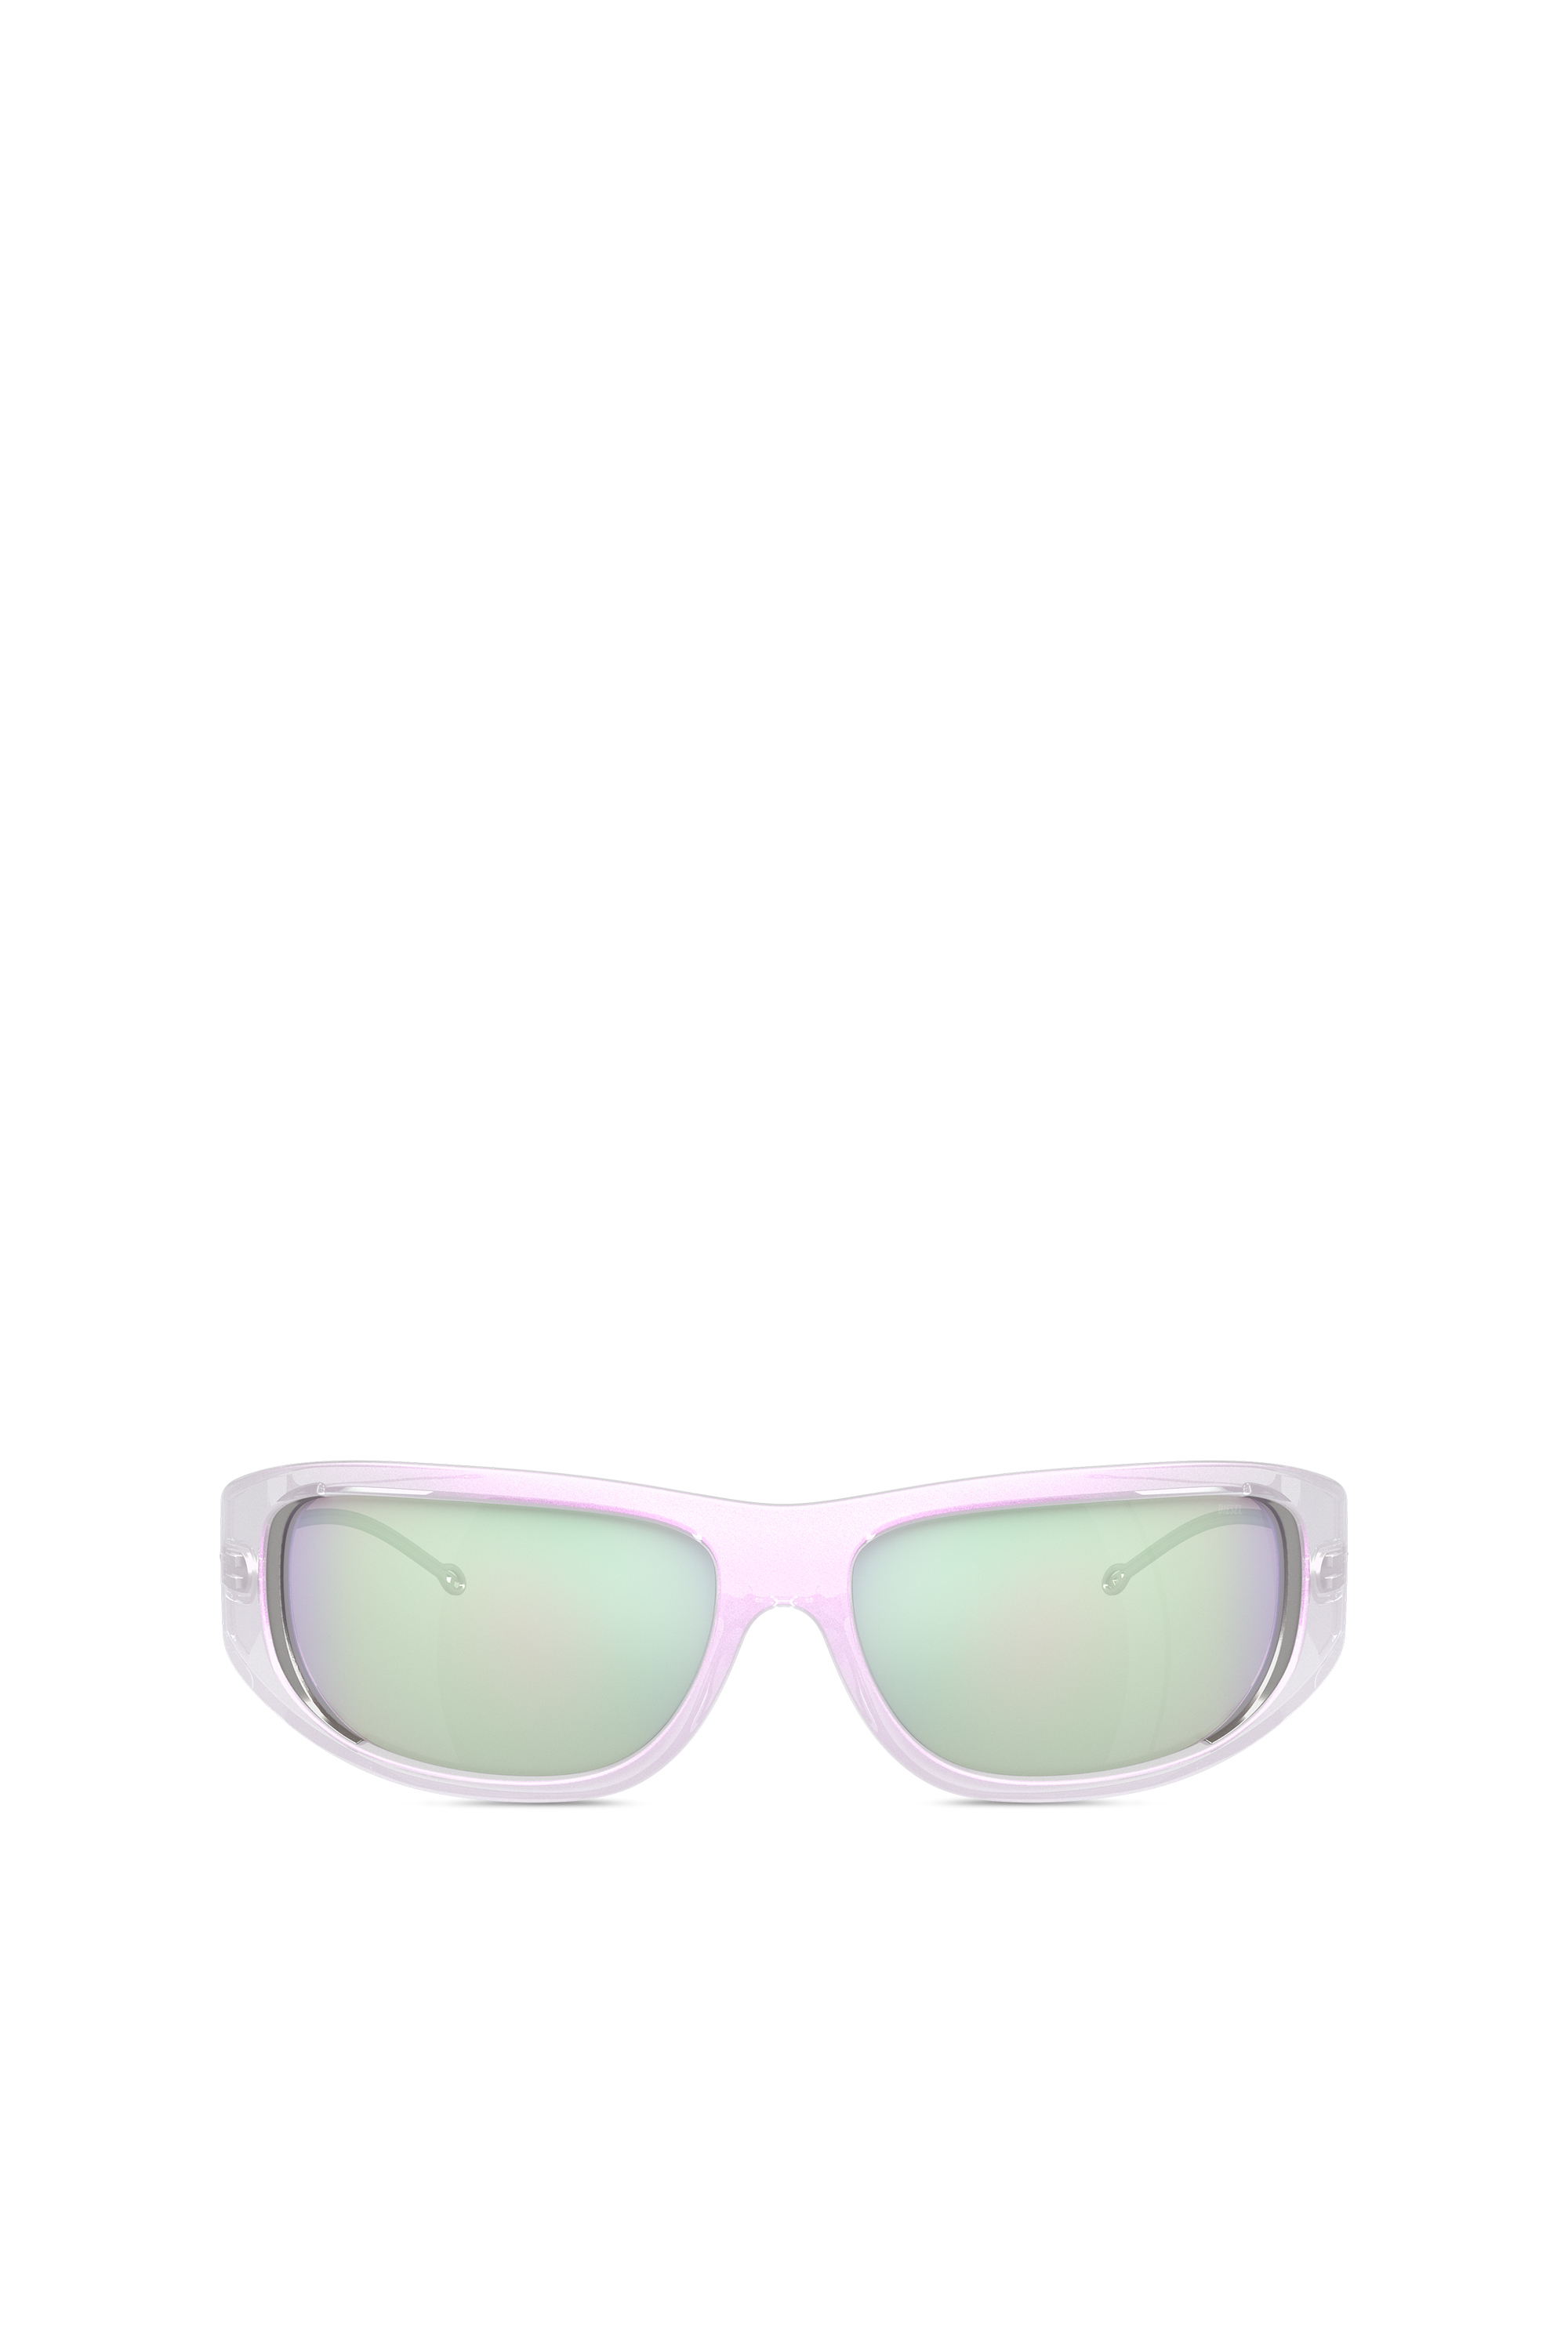 Diesel - Wraparound-Stil Brille - Sonnenbrille - Unisex - Weiss